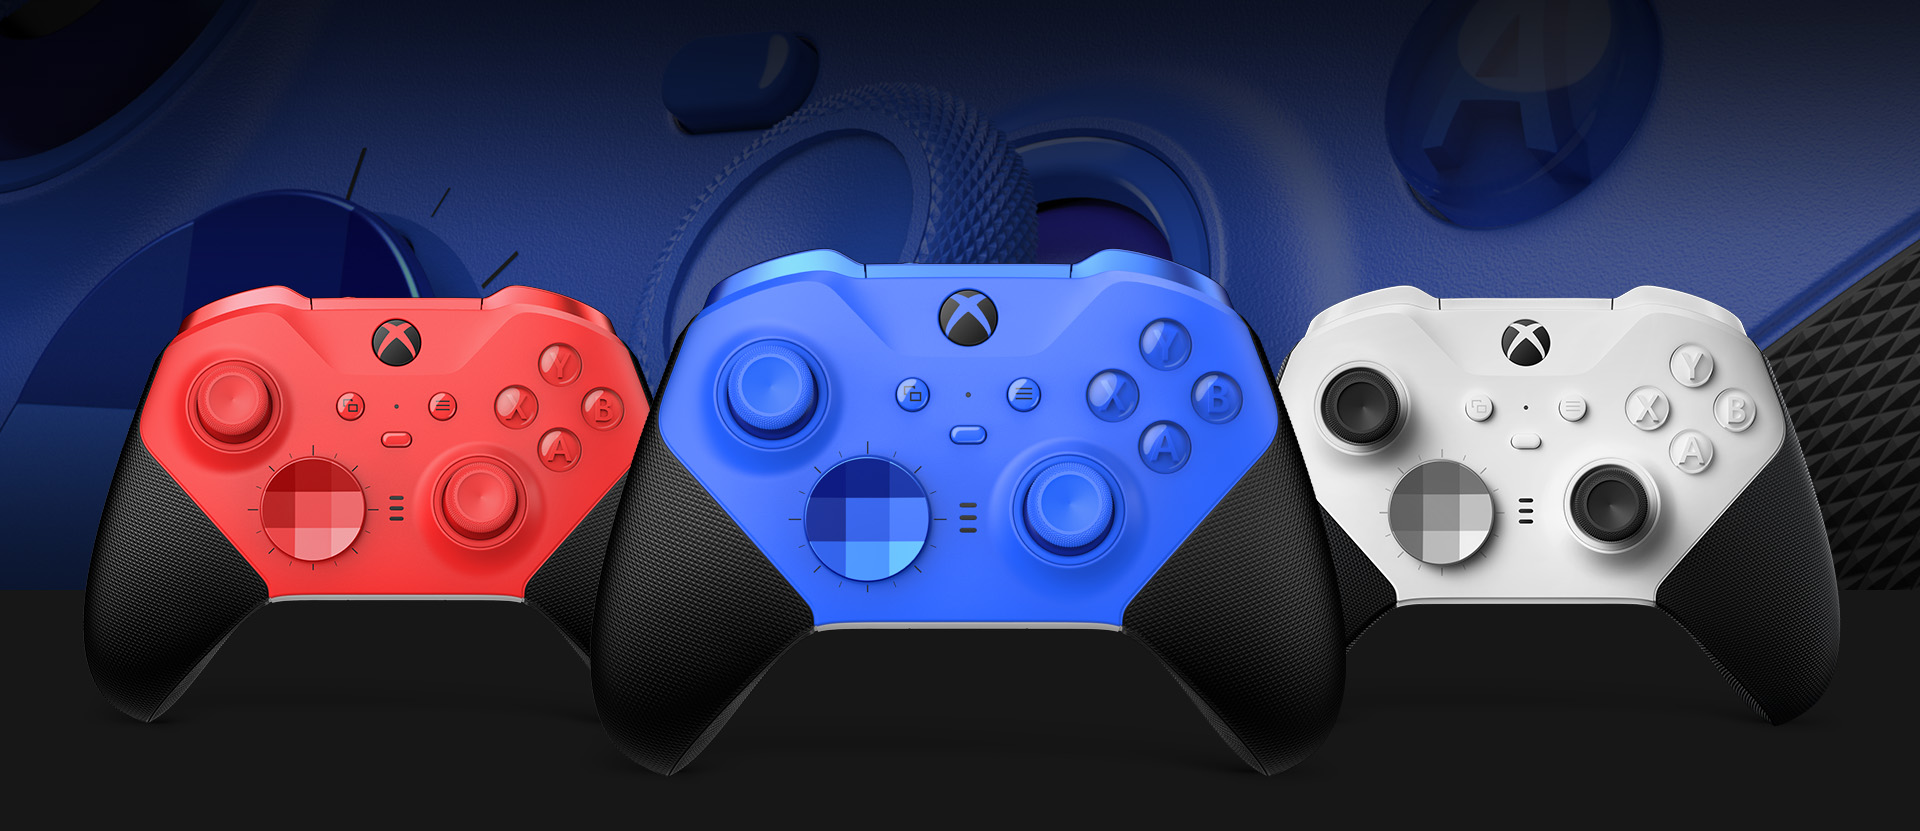 Vooraanzicht van de Xbox Elite draadloze controller Series 2 - Core (blauw) met daarnaast andere kleuropties. Een close-up van de duimsticks van de controller en getextureerde greep wordt op de achtergrond getoond.